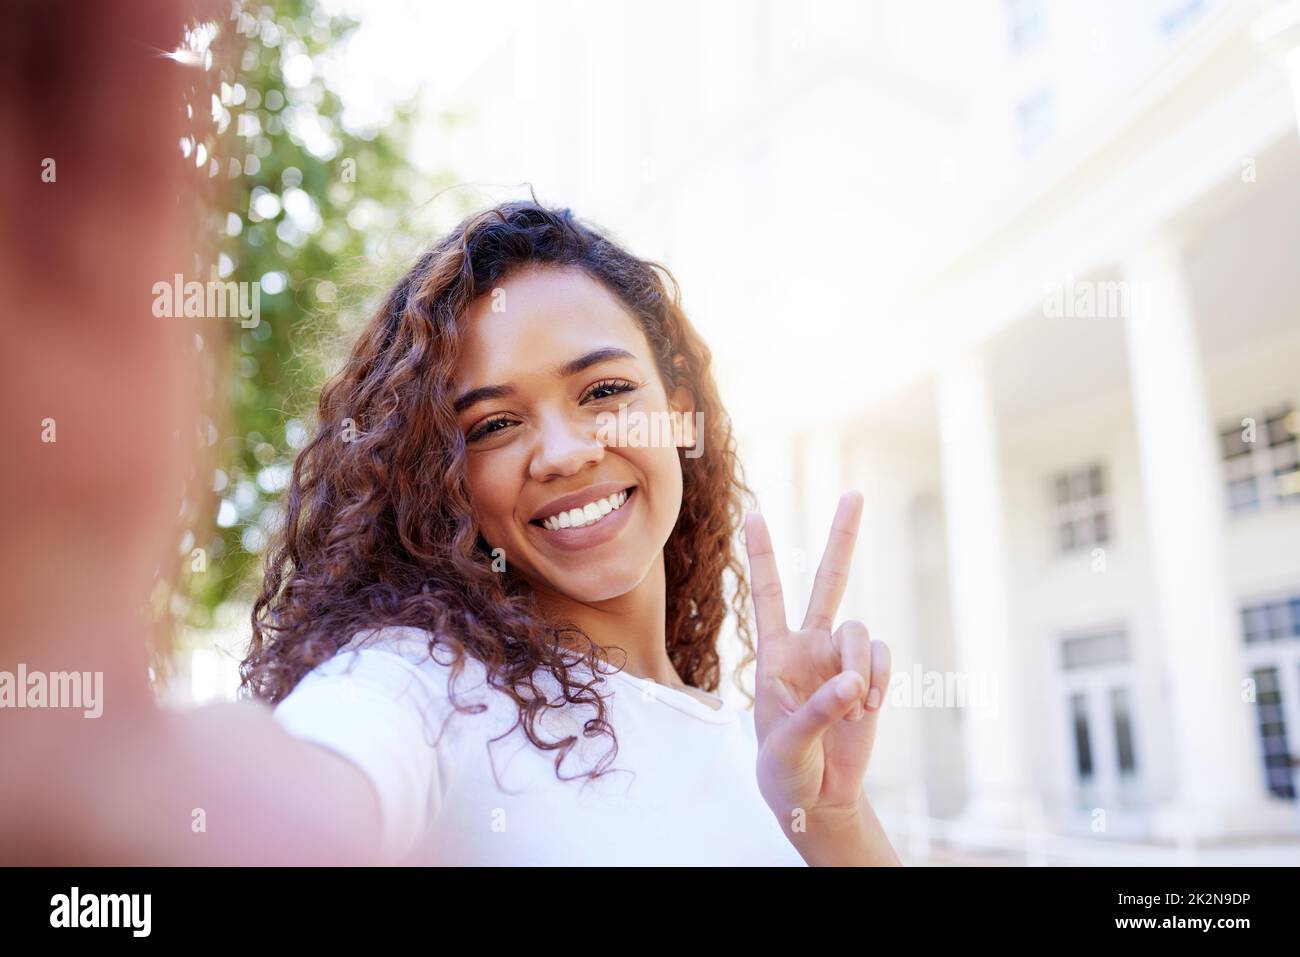 Il n'y a pas de chemin vers le bonheur le bonheur est le chemin. Photo d'une femme montrant un geste de paix tout en prenant un selfie à l'extérieur. Banque D'Images